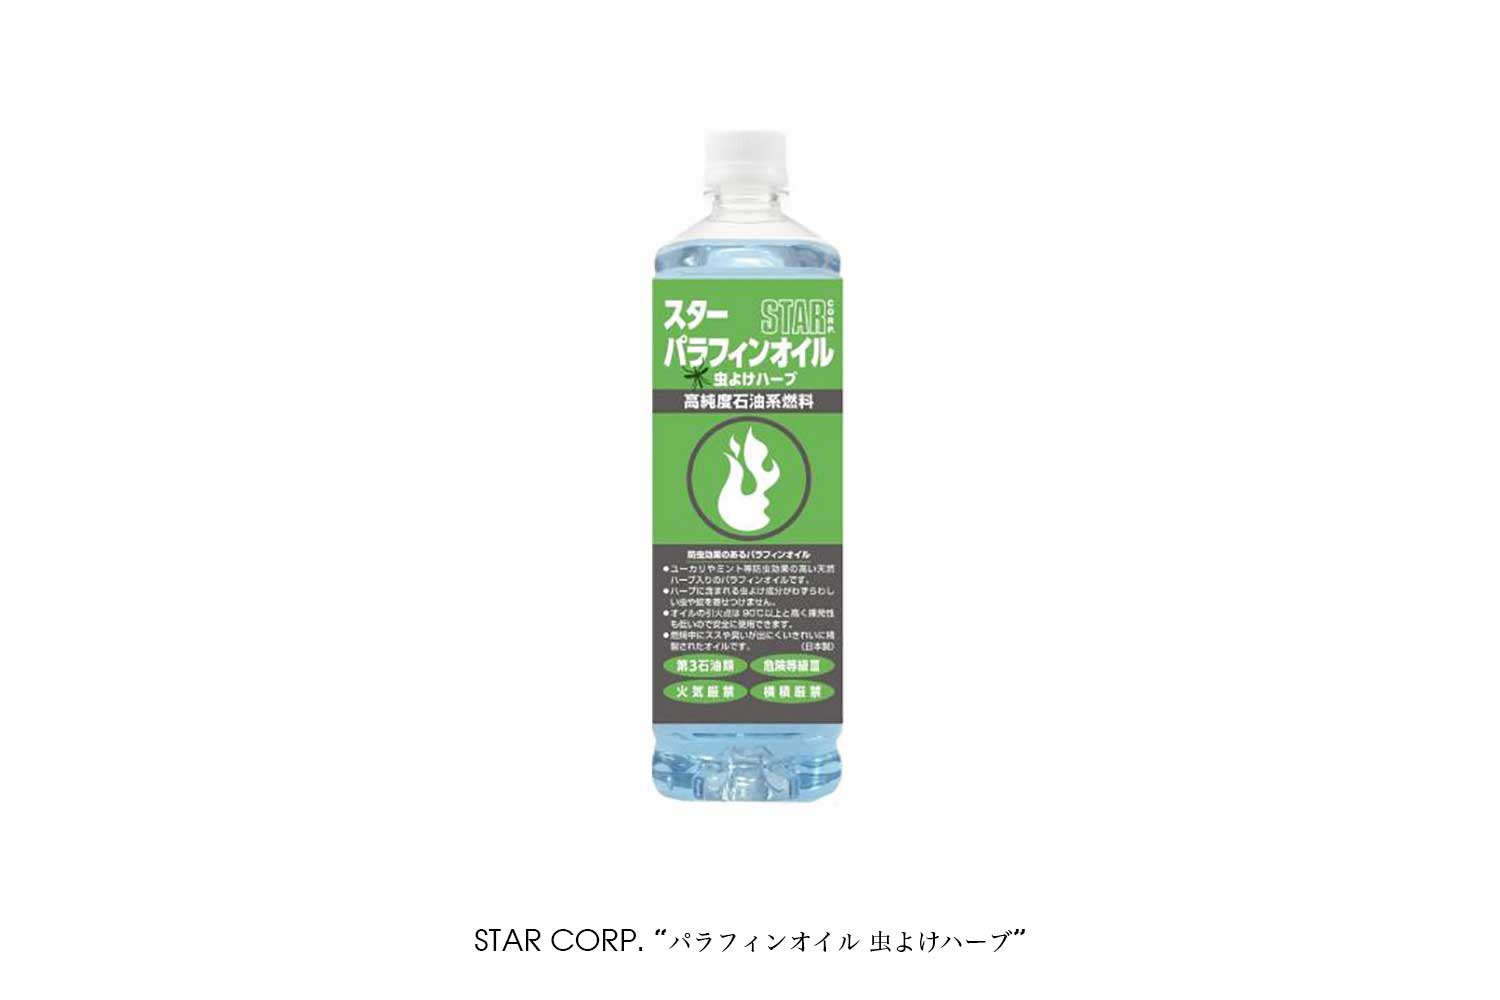 STAR CORP. "パラフィンオイル 虫よけハーブ"